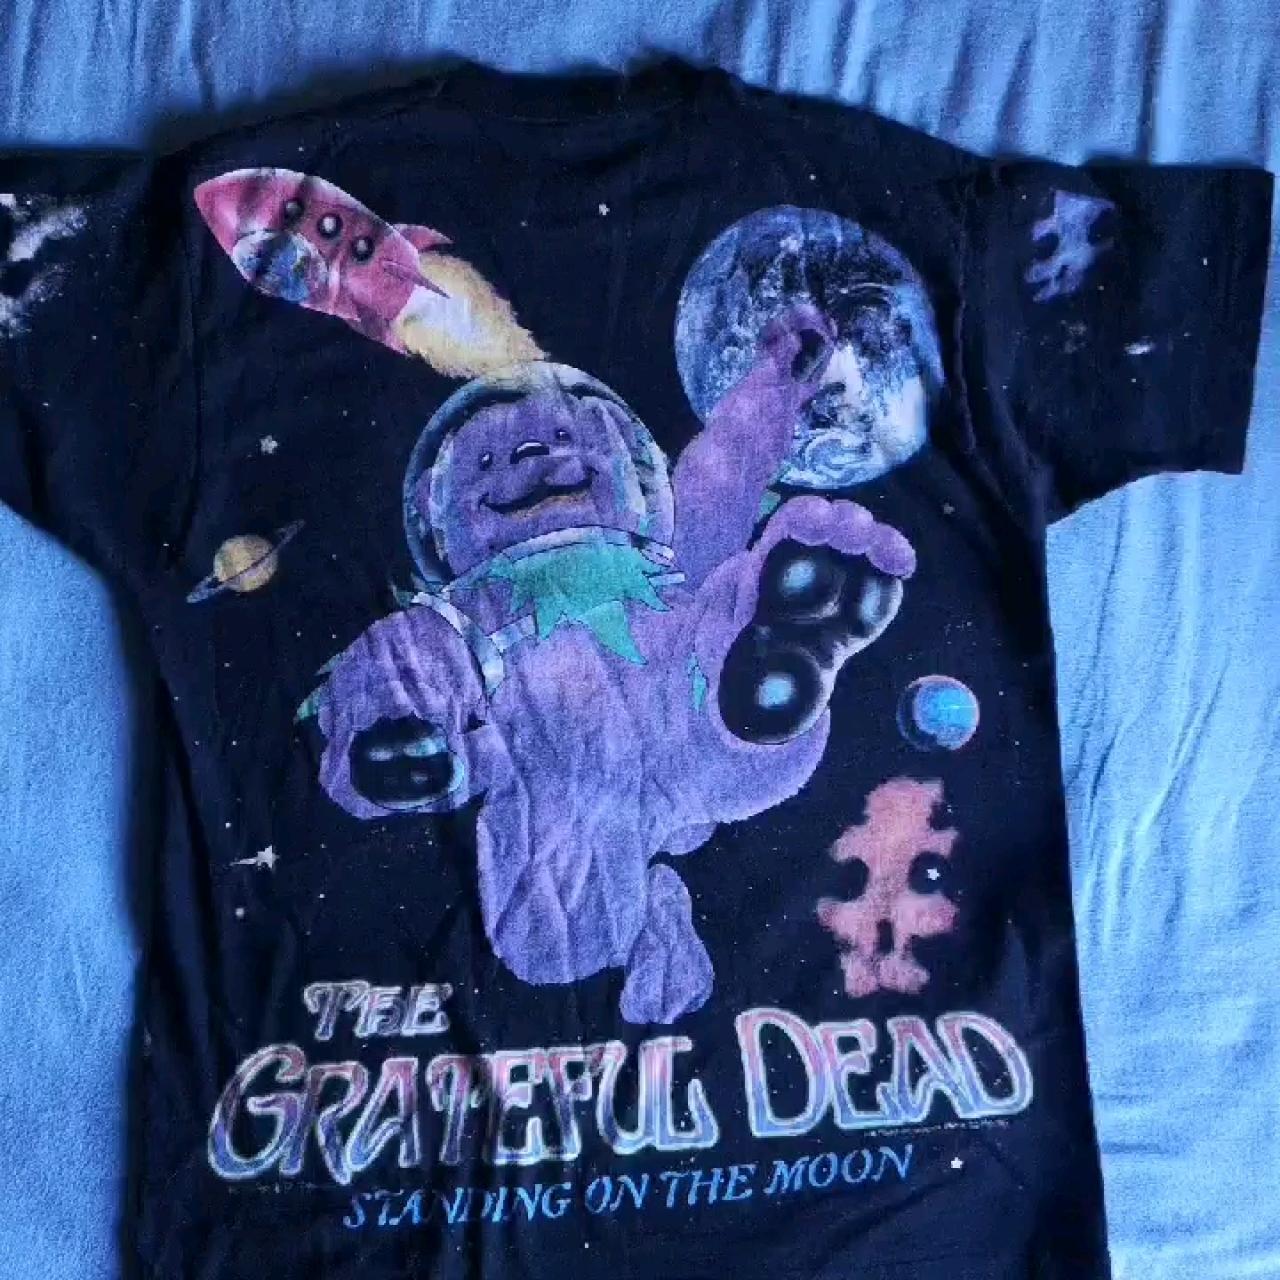 Atlanta Braves x Grateful Dead Shirt Size Large - Depop